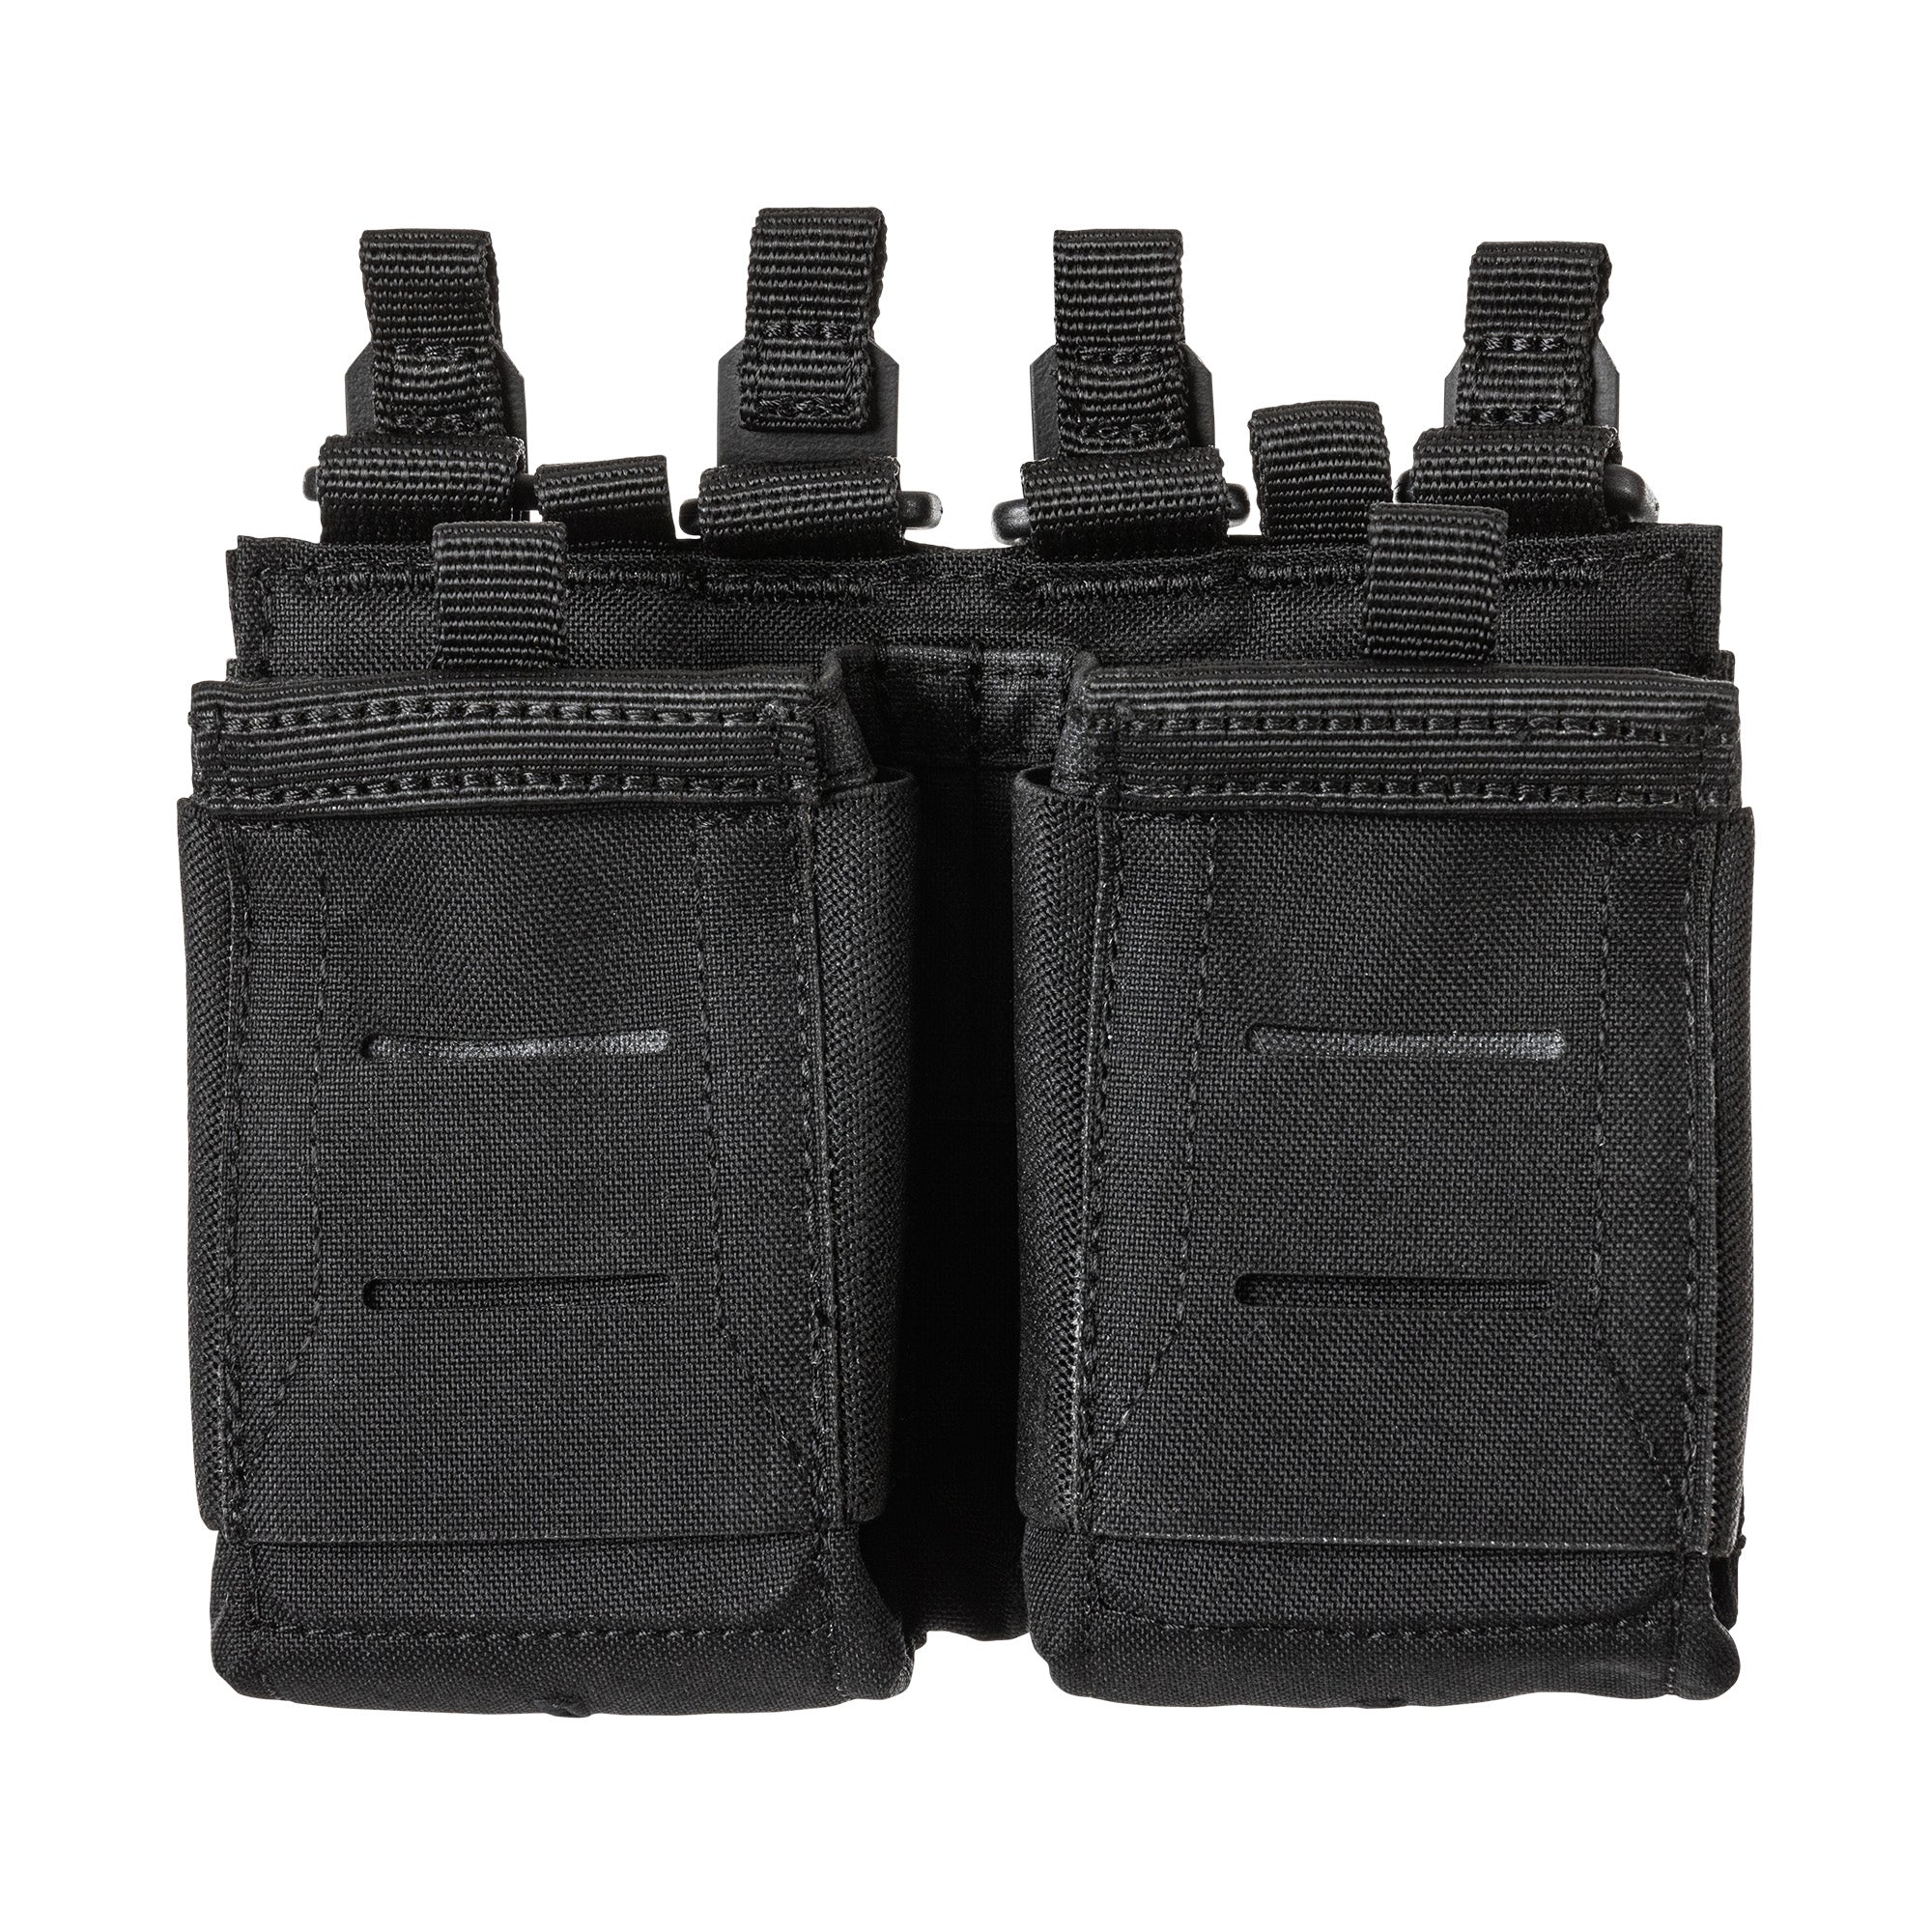 5.11 Tactical Flex Double AR Mag Pouch 2.0 Accessories 5.11 Tactical Black Tactical Gear Supplier Tactical Distributors Australia